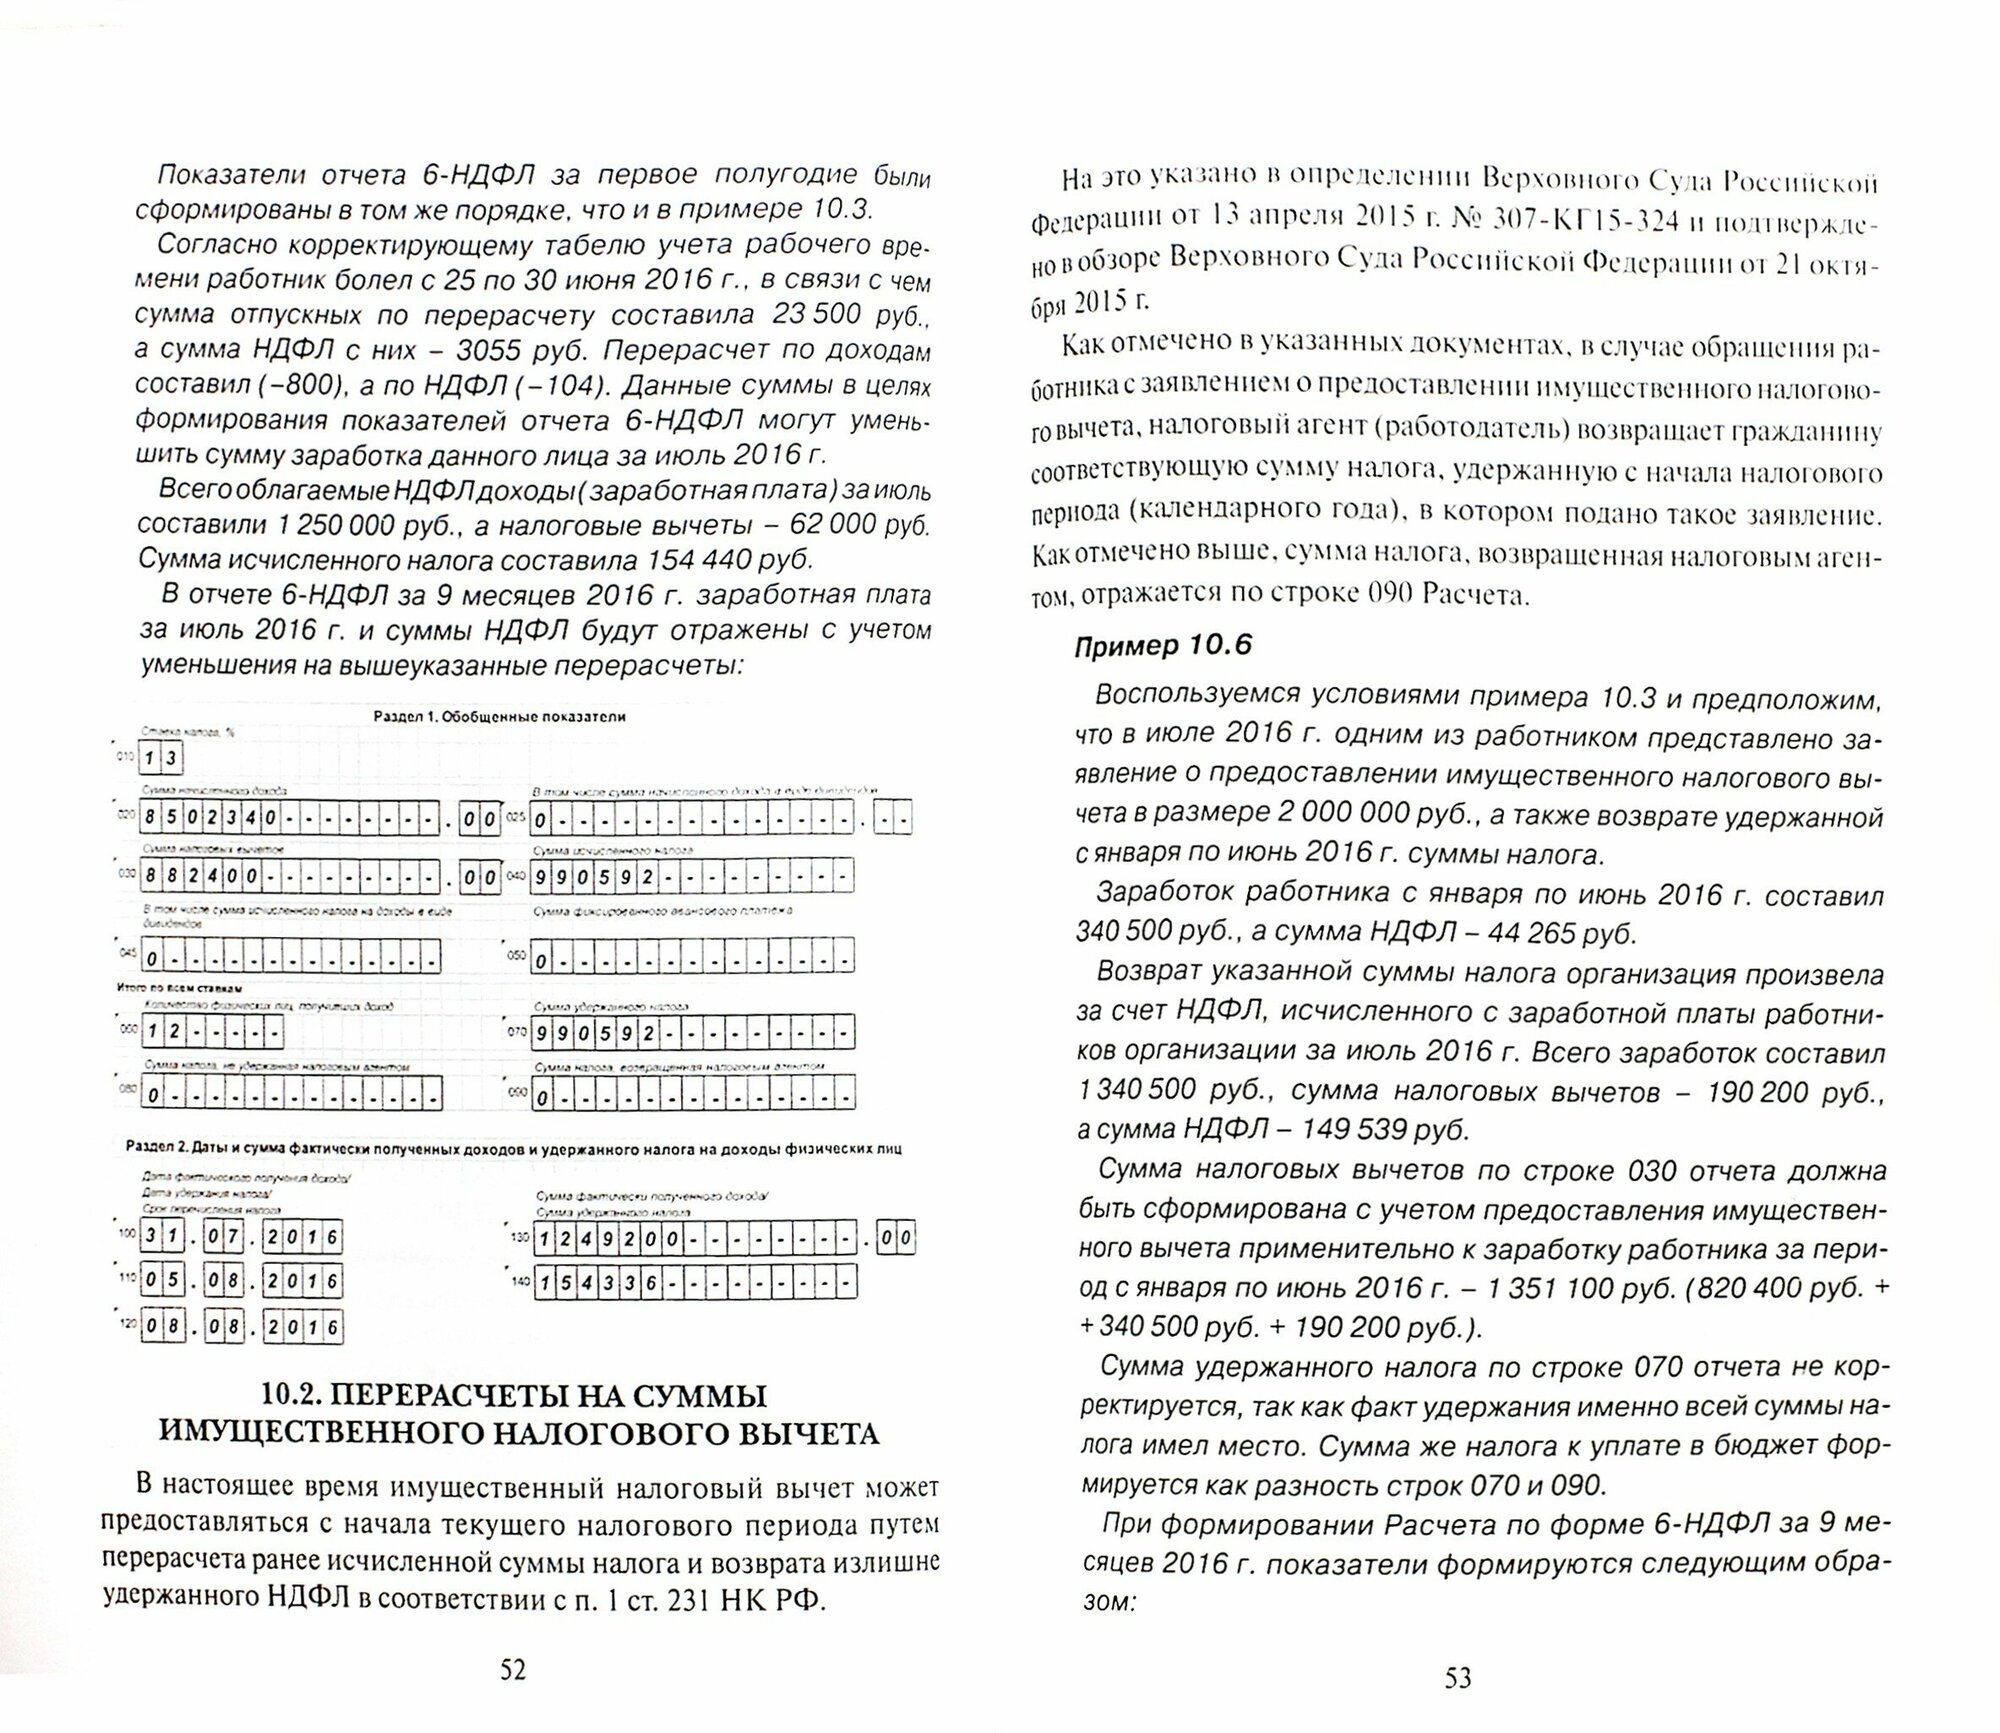 Отчет по форме 6-НДФЛ. Правила и образцы заполнения - фото №4